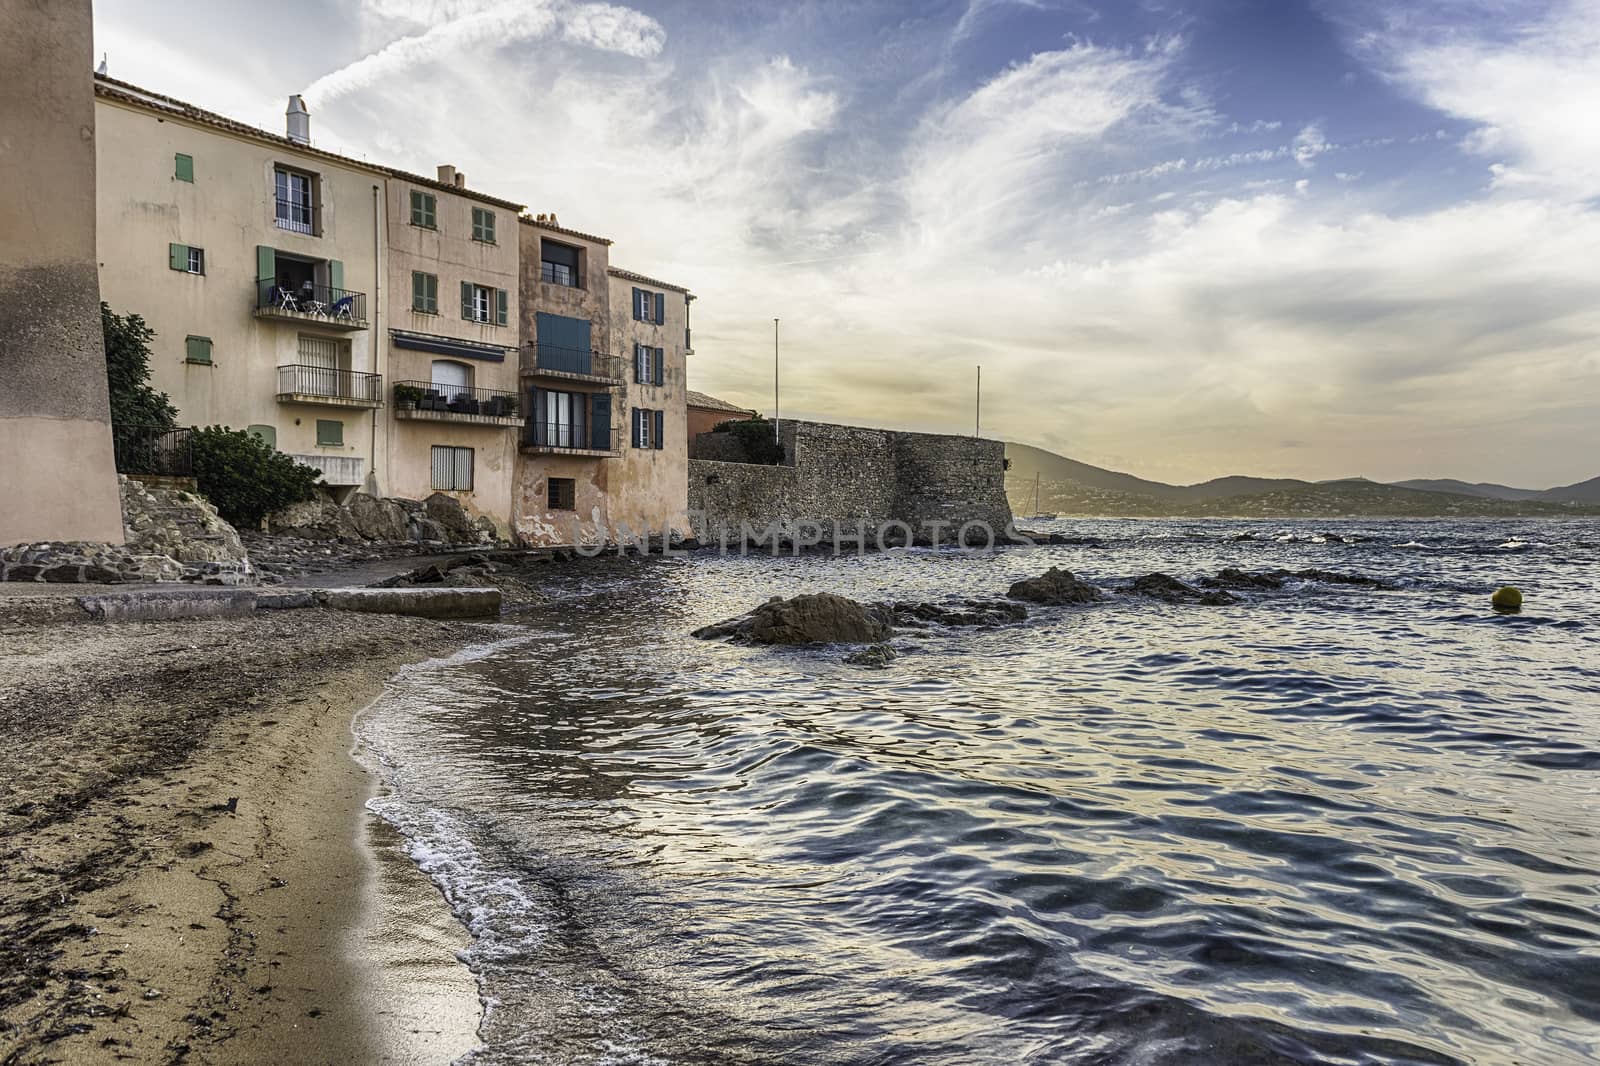 The scenic La Ponche beach in Saint-Tropez, Cote d'Azur, France by marcorubino